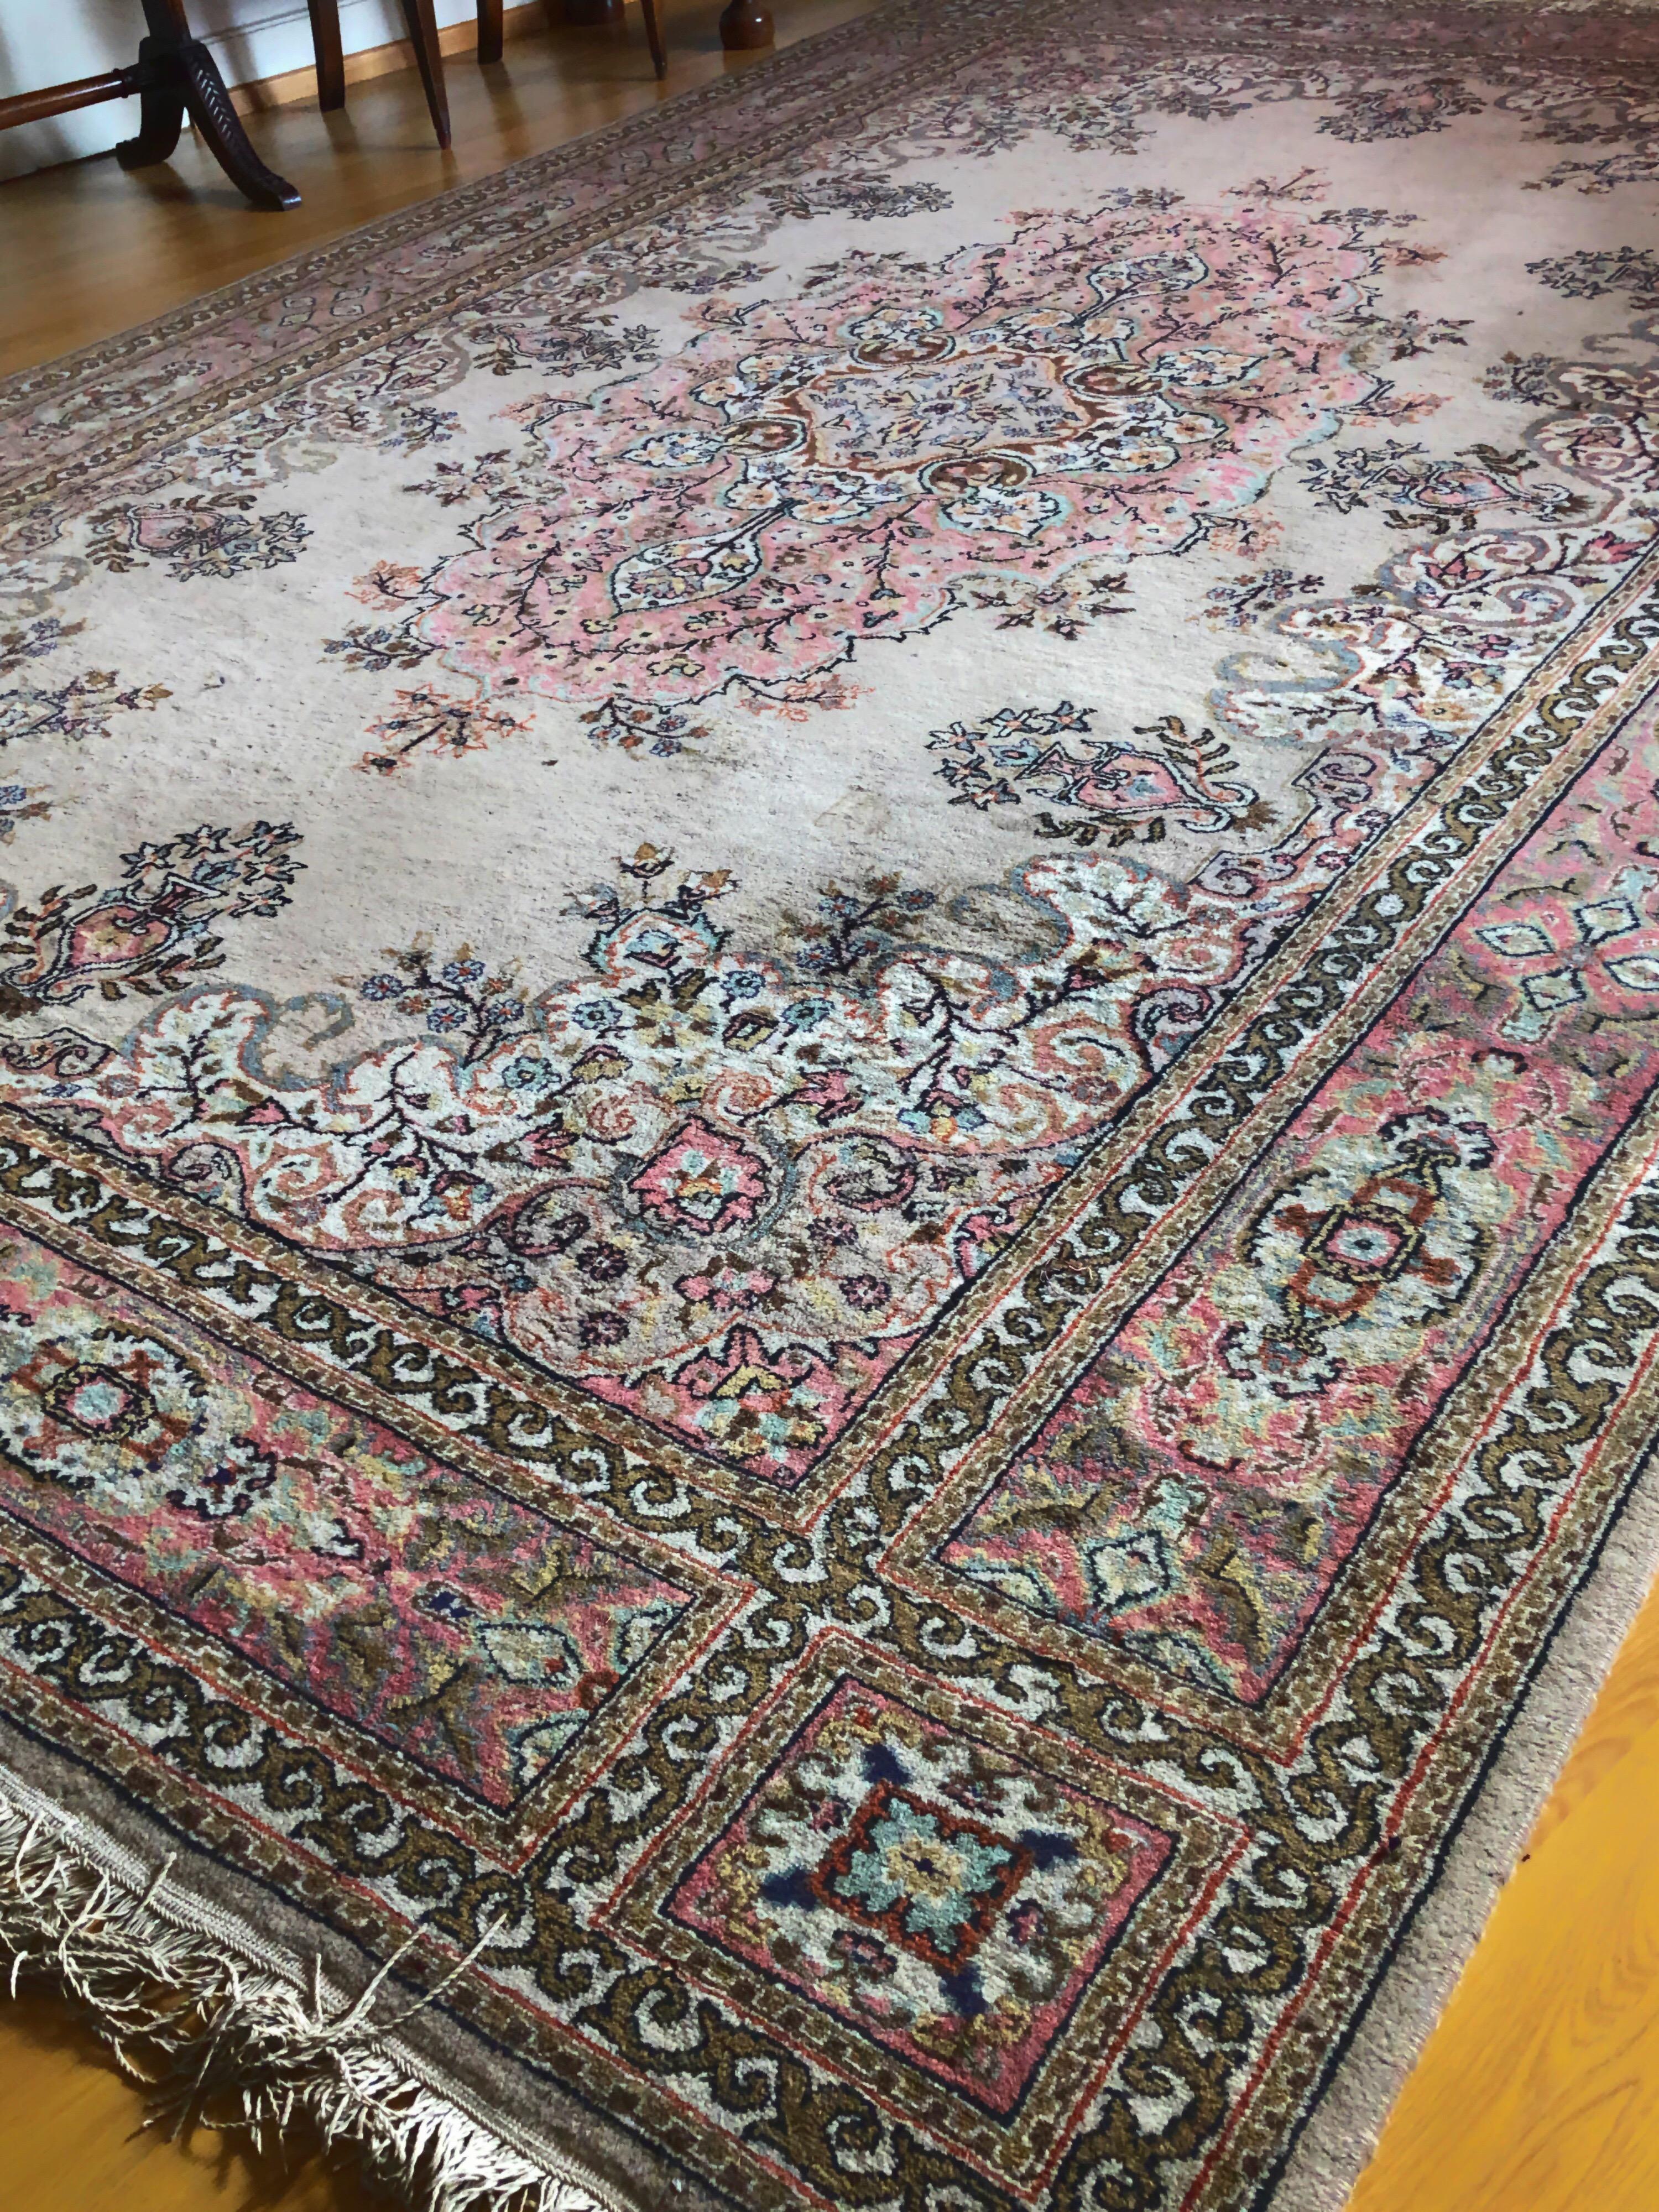 Turkish Large Carpet Kilim Pink Blue Floral Motives Elegant Asian Design SALE  3